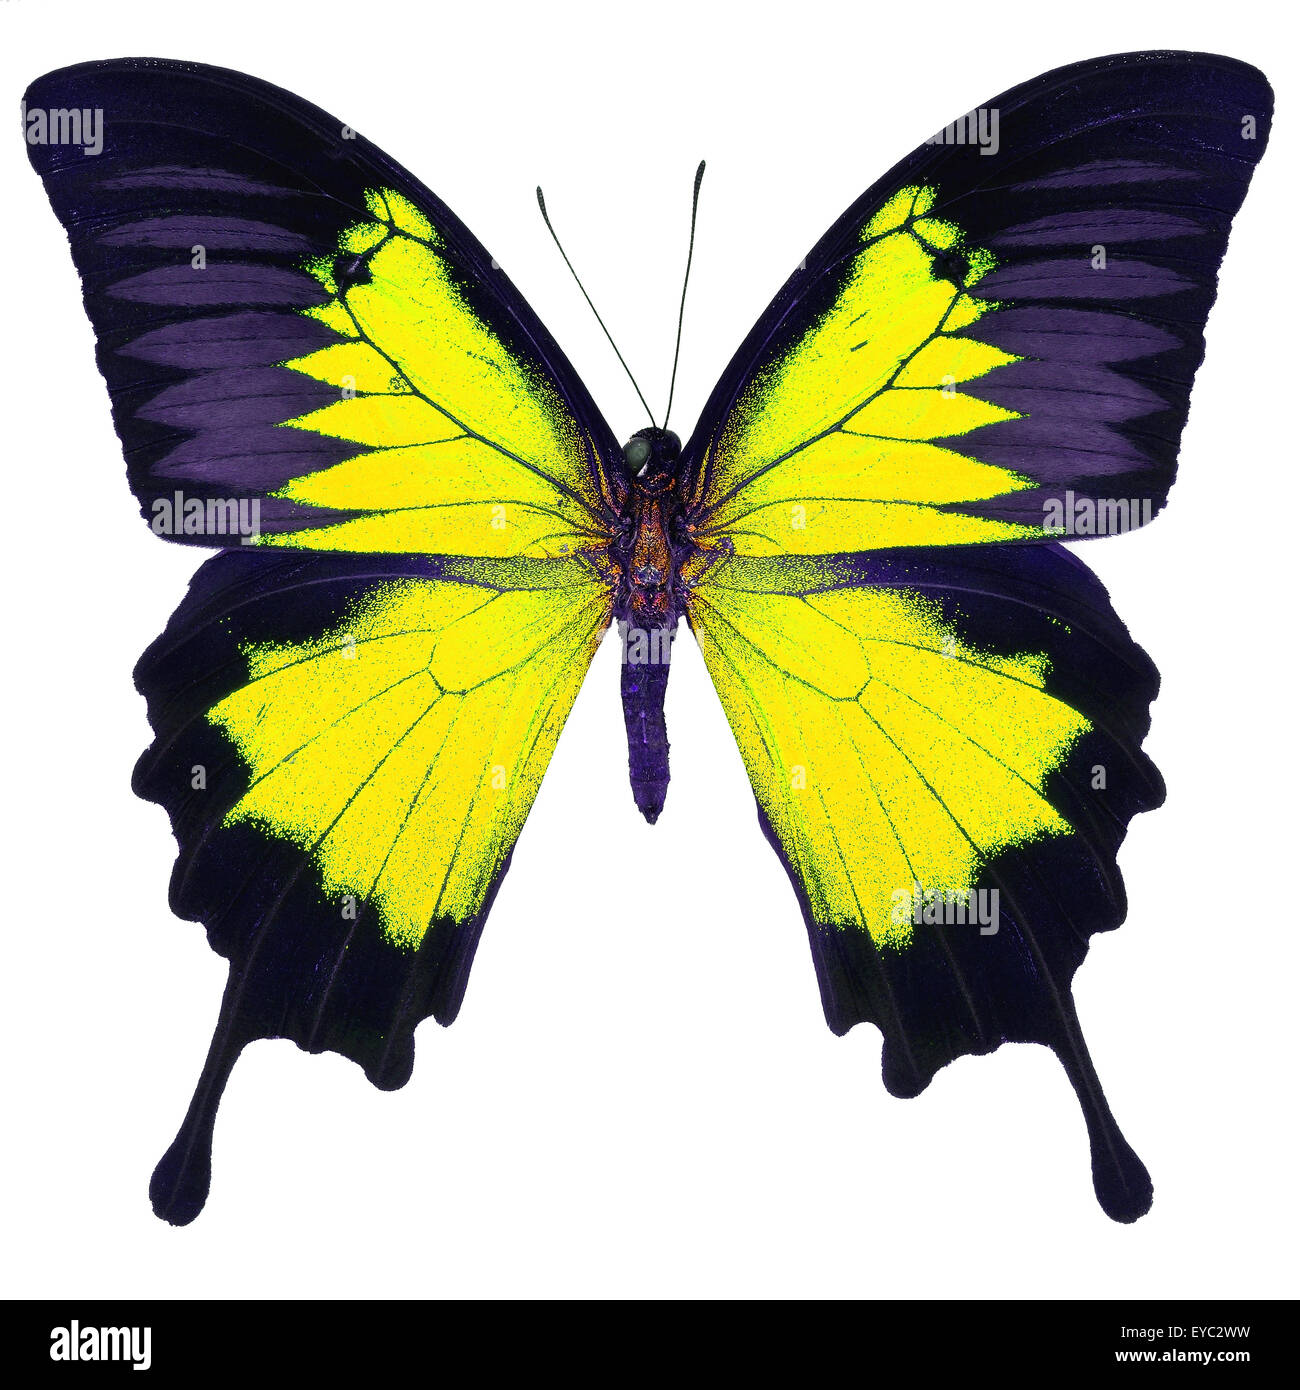 Bel colore giallo farfalla, Imperatore Blu, Blu di montagna (Papilio ulysses) in fantasia profilo colore, isolato su sfondo bianco Foto Stock